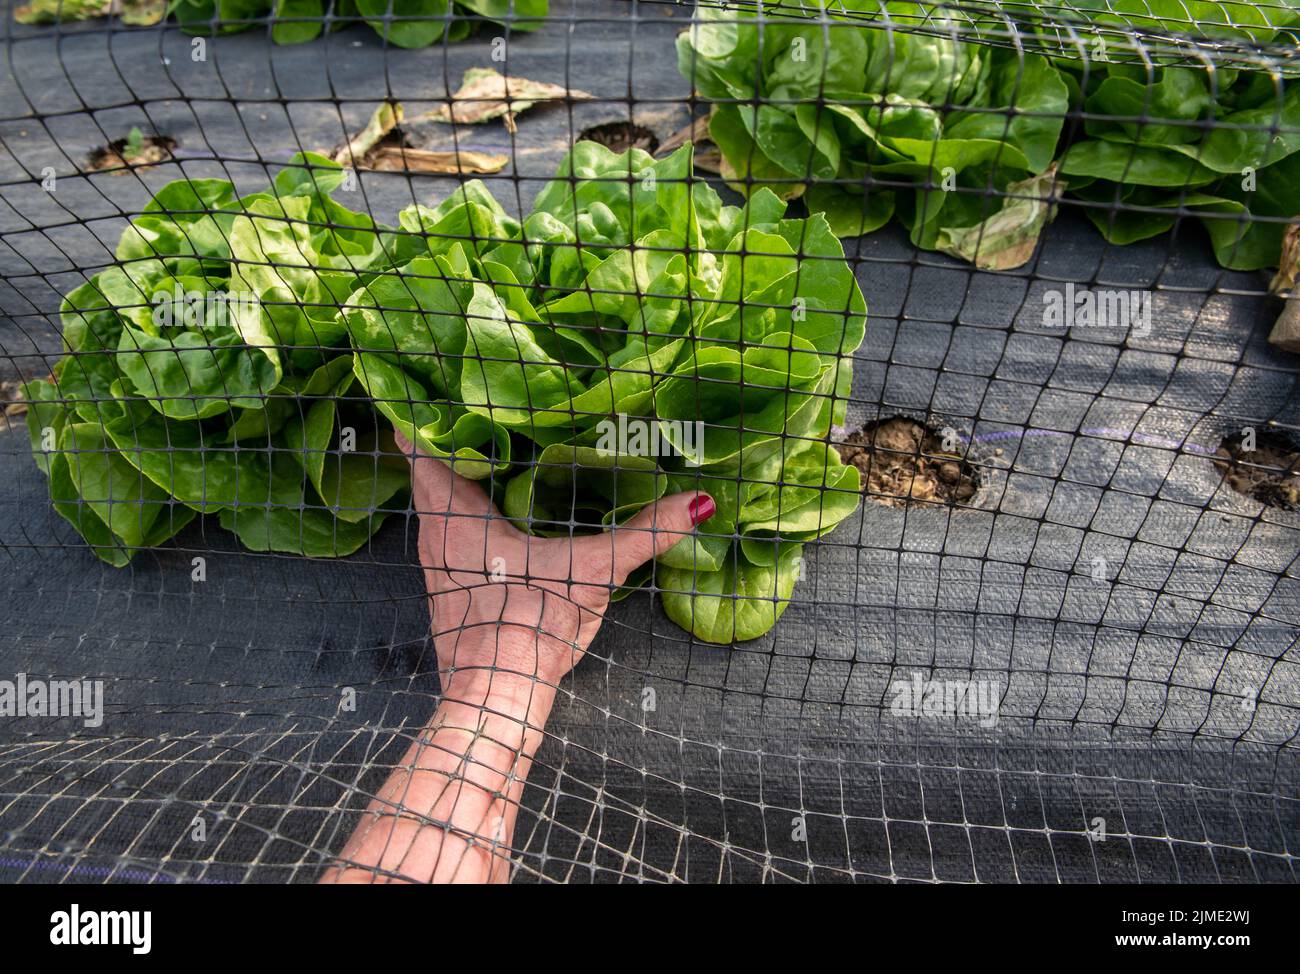 Hand mit rotem Nagellack reicht unter Gartennetz, um grünen Salat zu pflücken Stockfoto